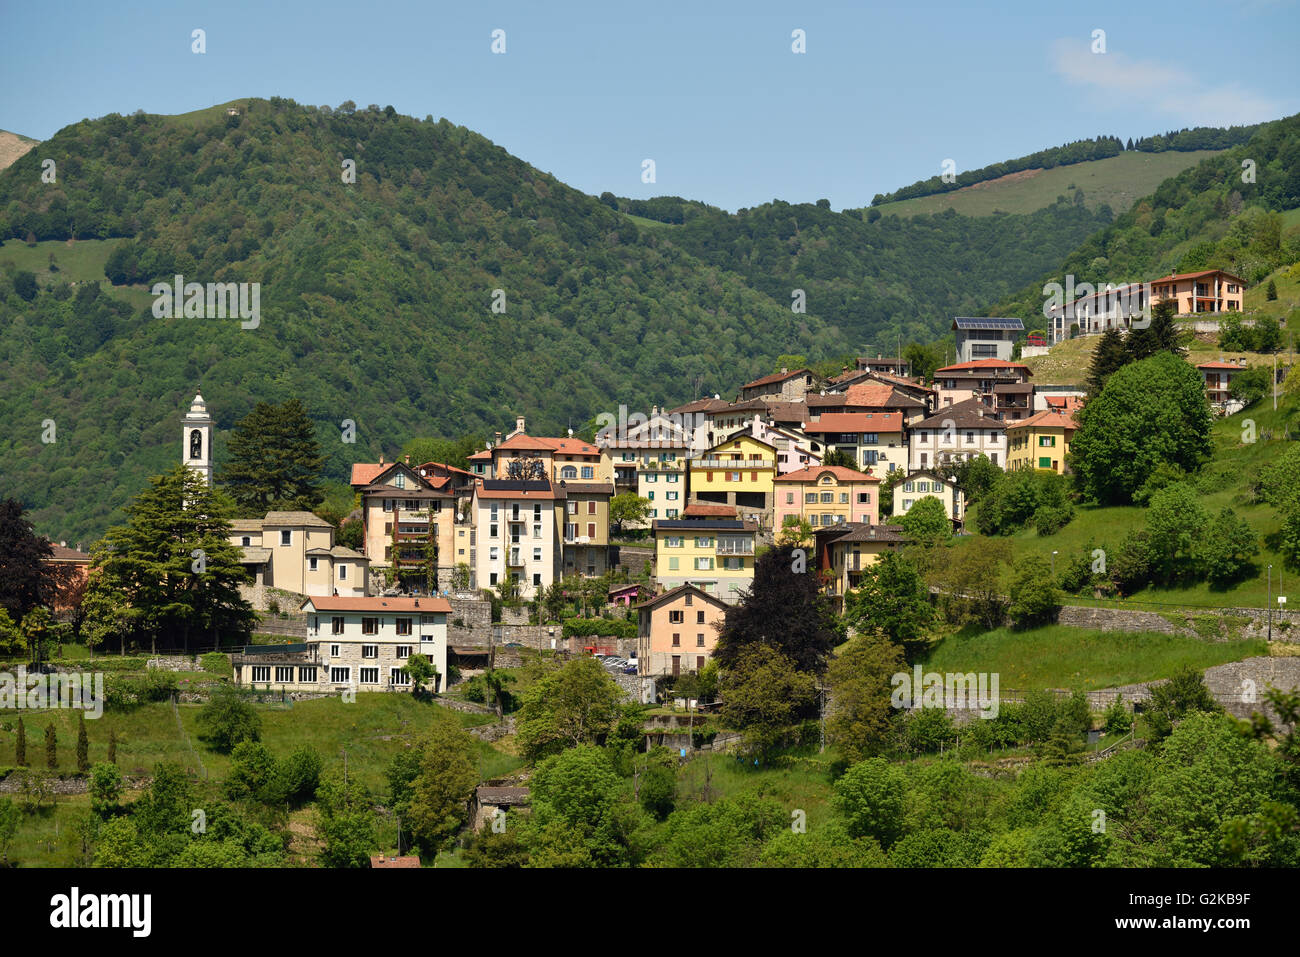 Village Bruzella in Valle di Muggio, Breggia, District Mendrisio, Canton of Ticino, Switzerland Stock Photo